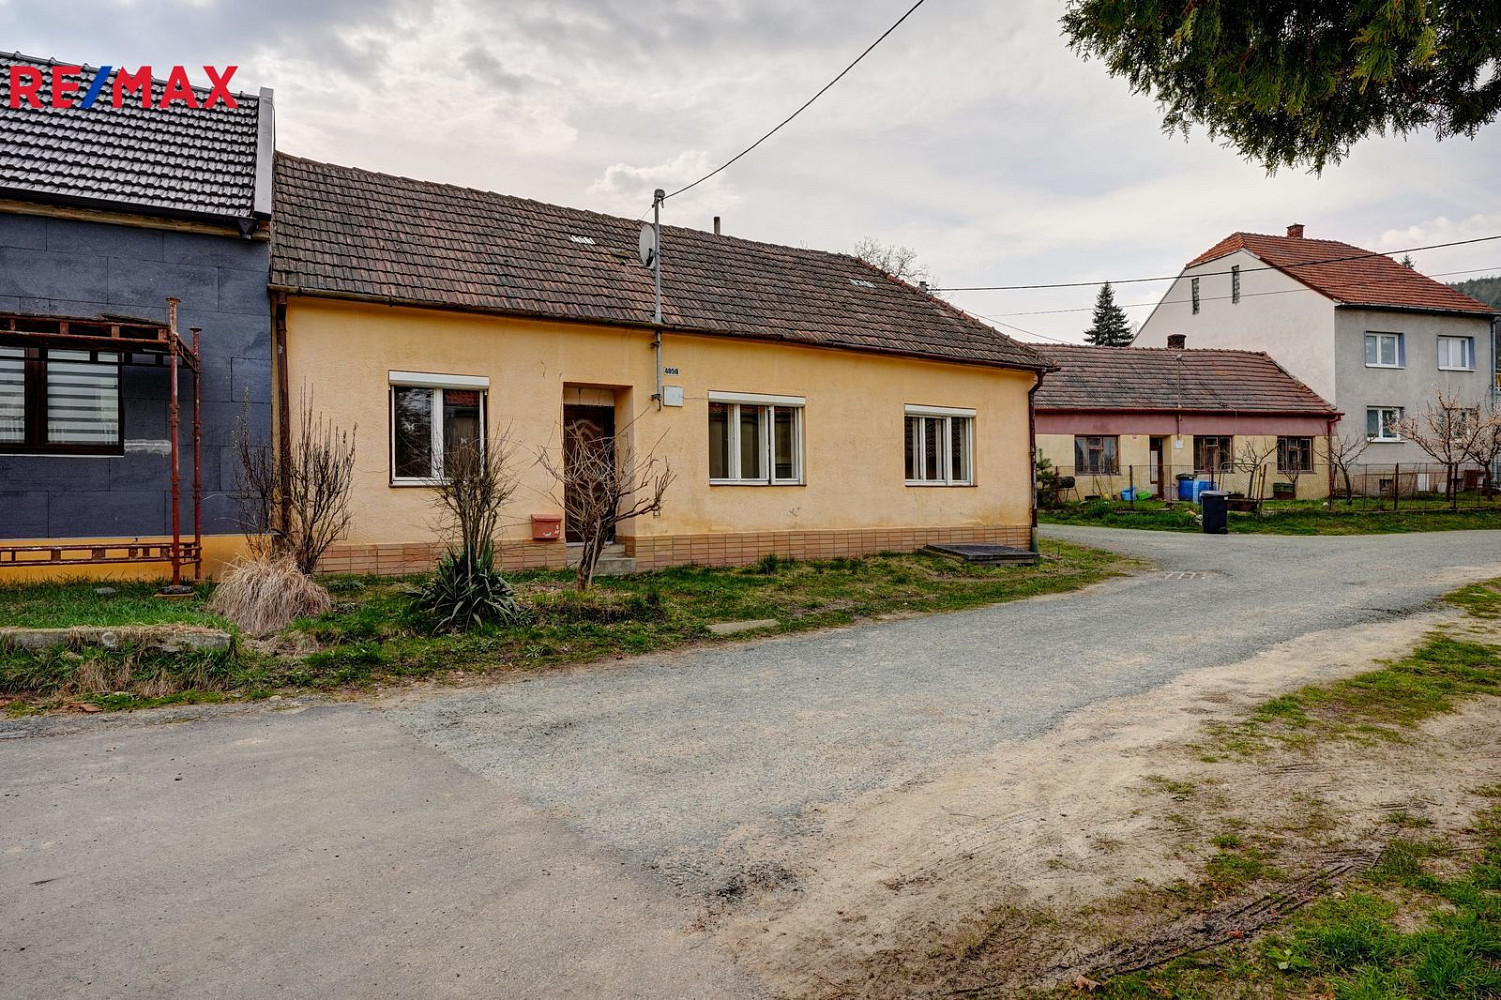 Kyjov - Bohuslavice, okres Hodonín